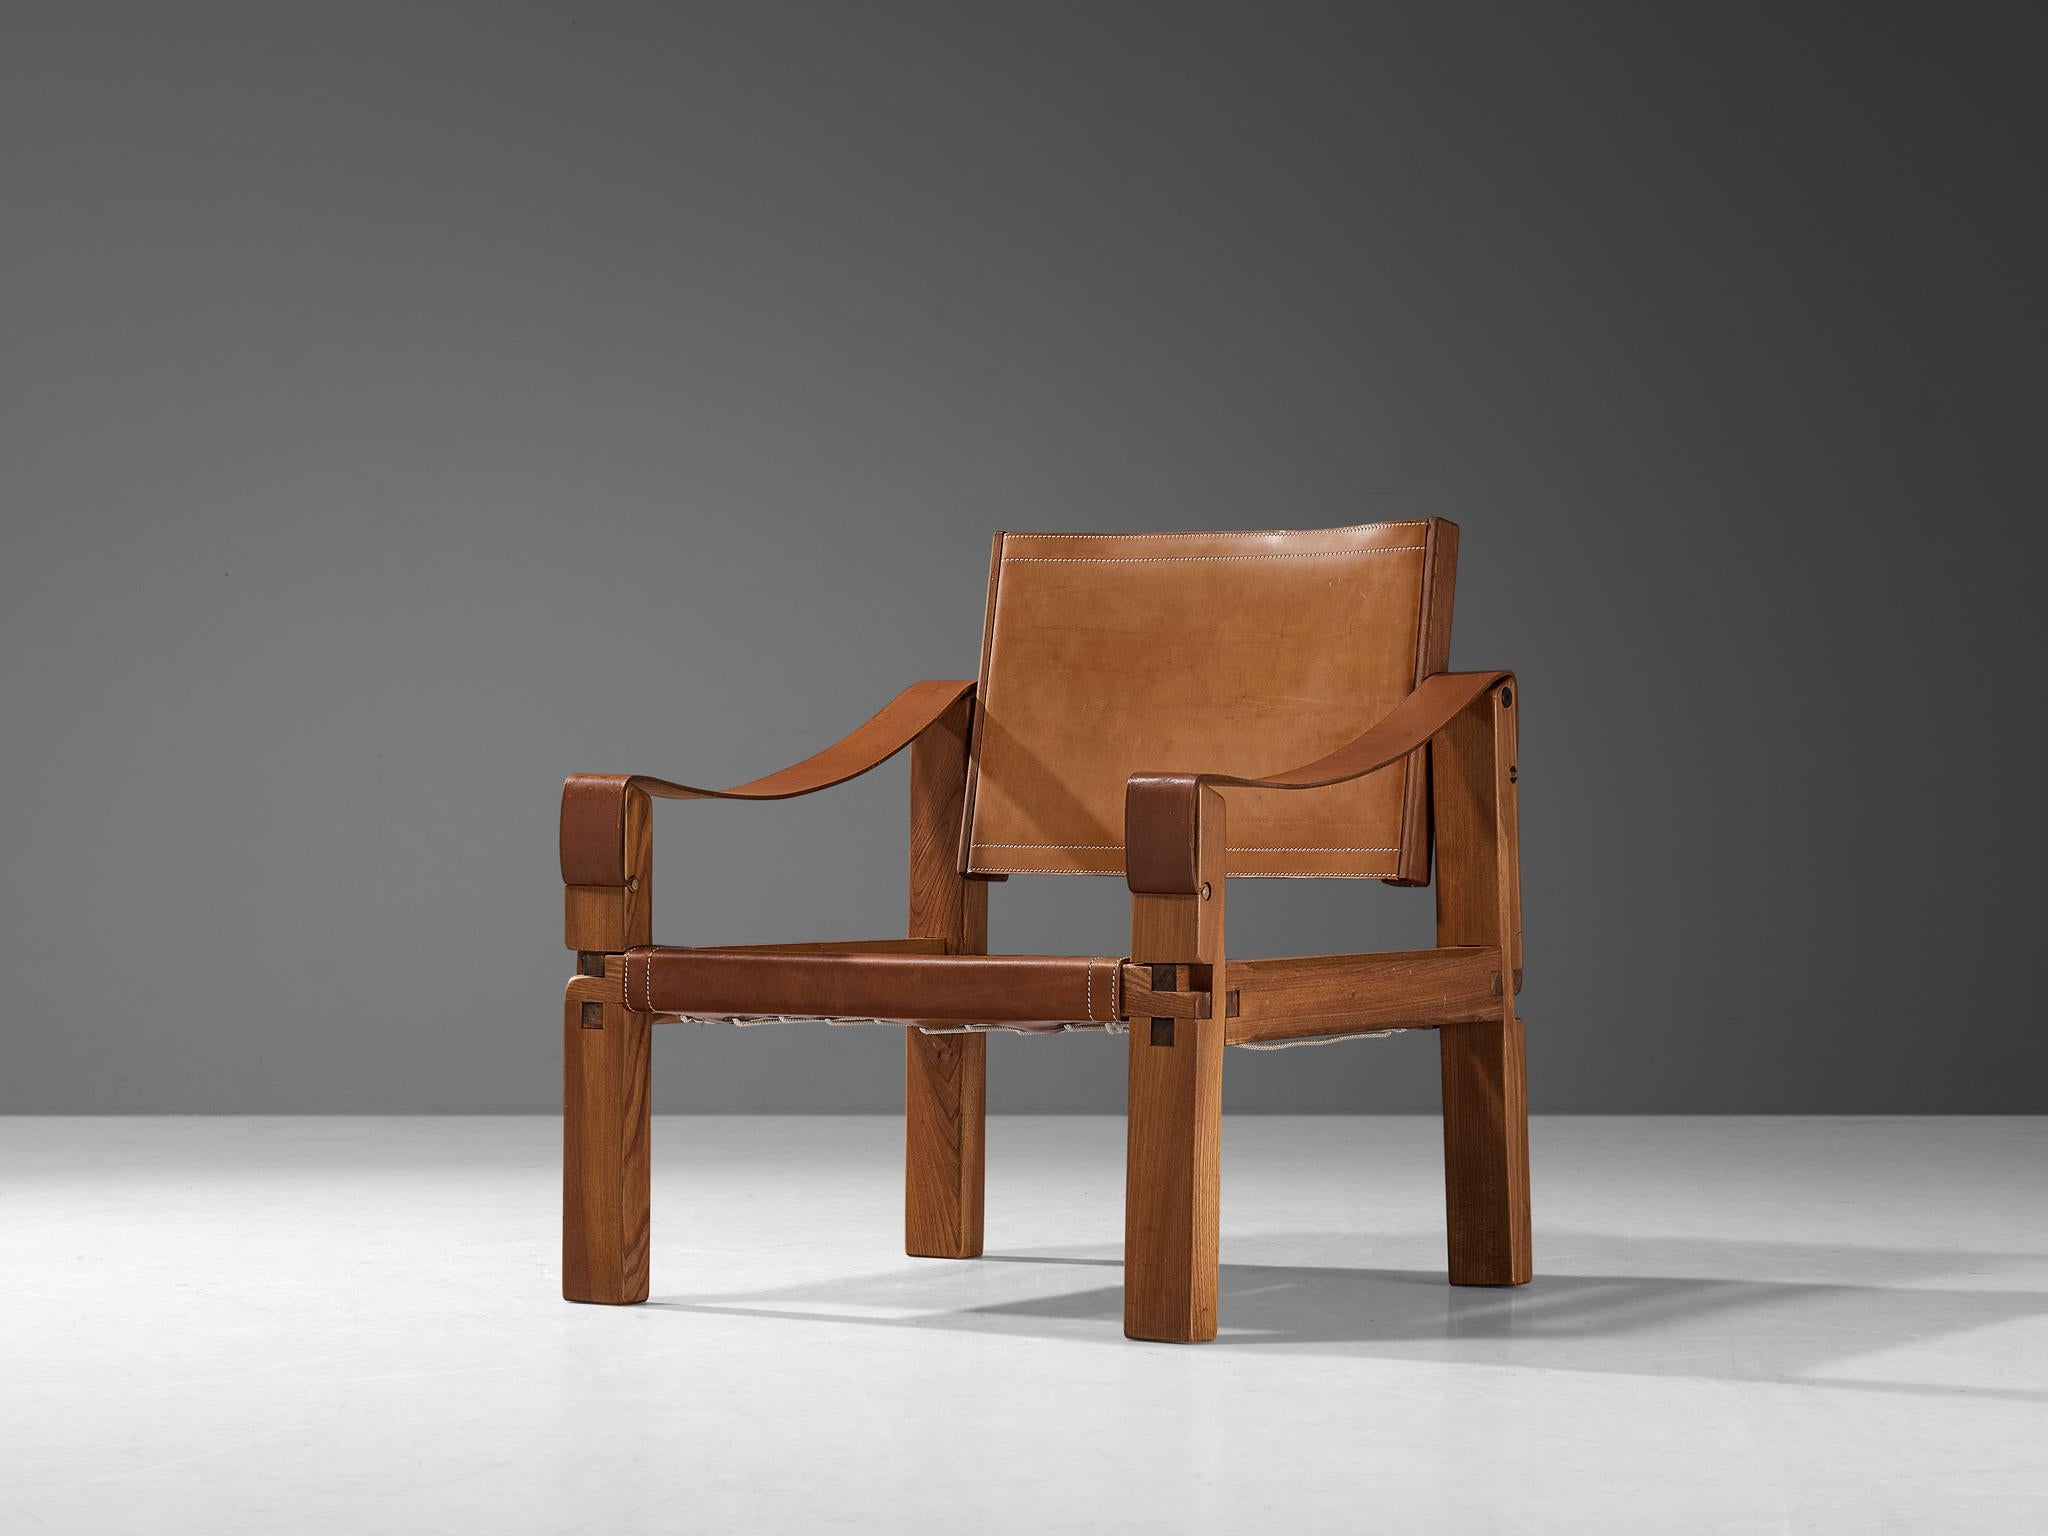 Pierre Chapo, Sessel Modell 'S10X', Ulme, Leder, Frankreich, um 1964.

Bei diesem Entwurf handelt es sich um eine frühe Ausgabe, die nach der ursprünglichen handwerklichen Methode von Pierre Chapo erstellt wurde. Dieser bequeme Sessel aus massivem